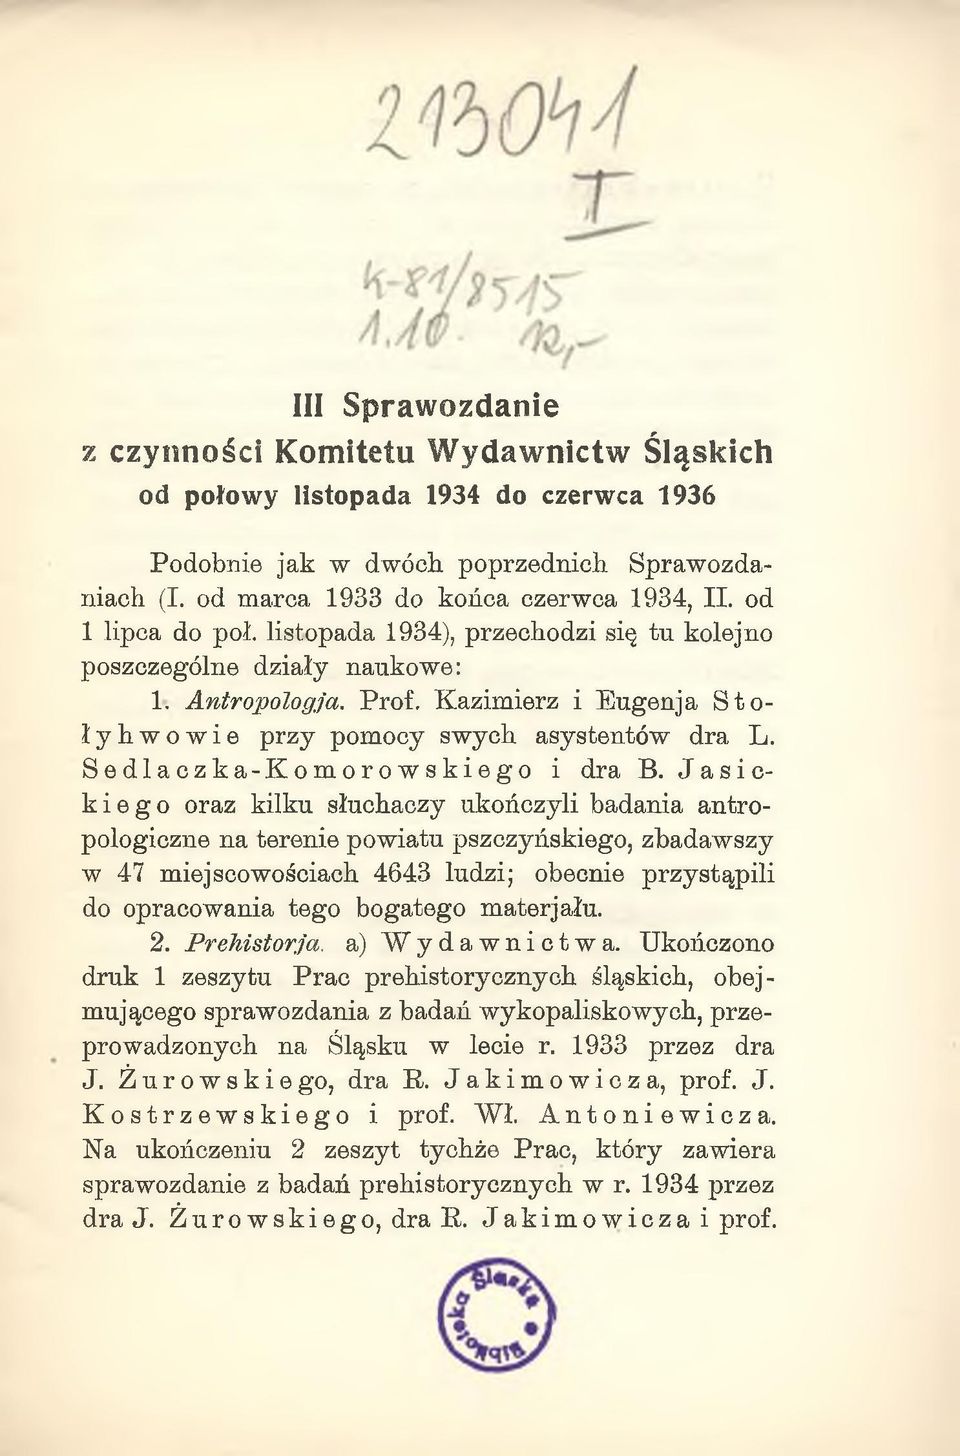 Sedlaczka-Komorowskiego i dra B.